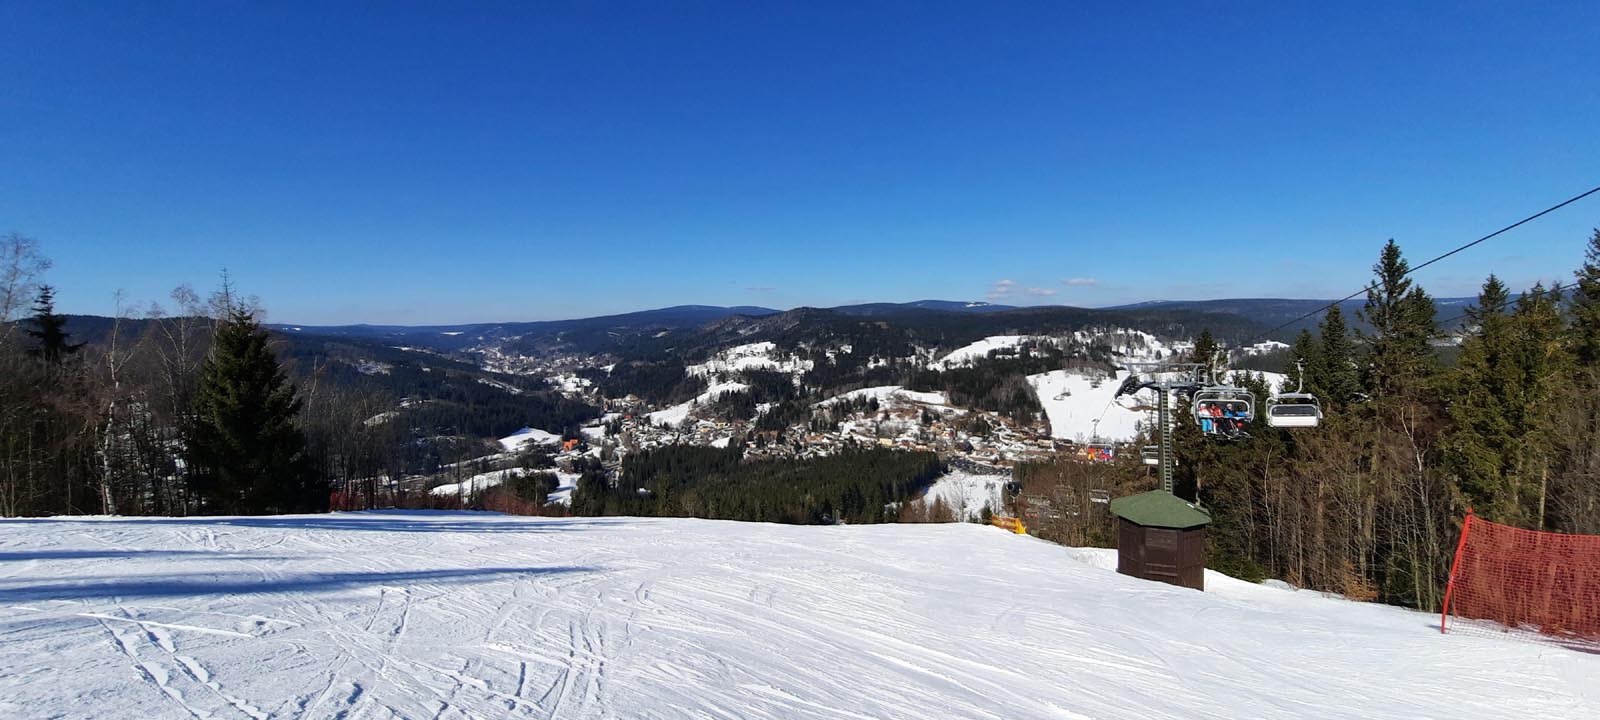 Ski areál Tanvaldský Špičák  - Tanvald